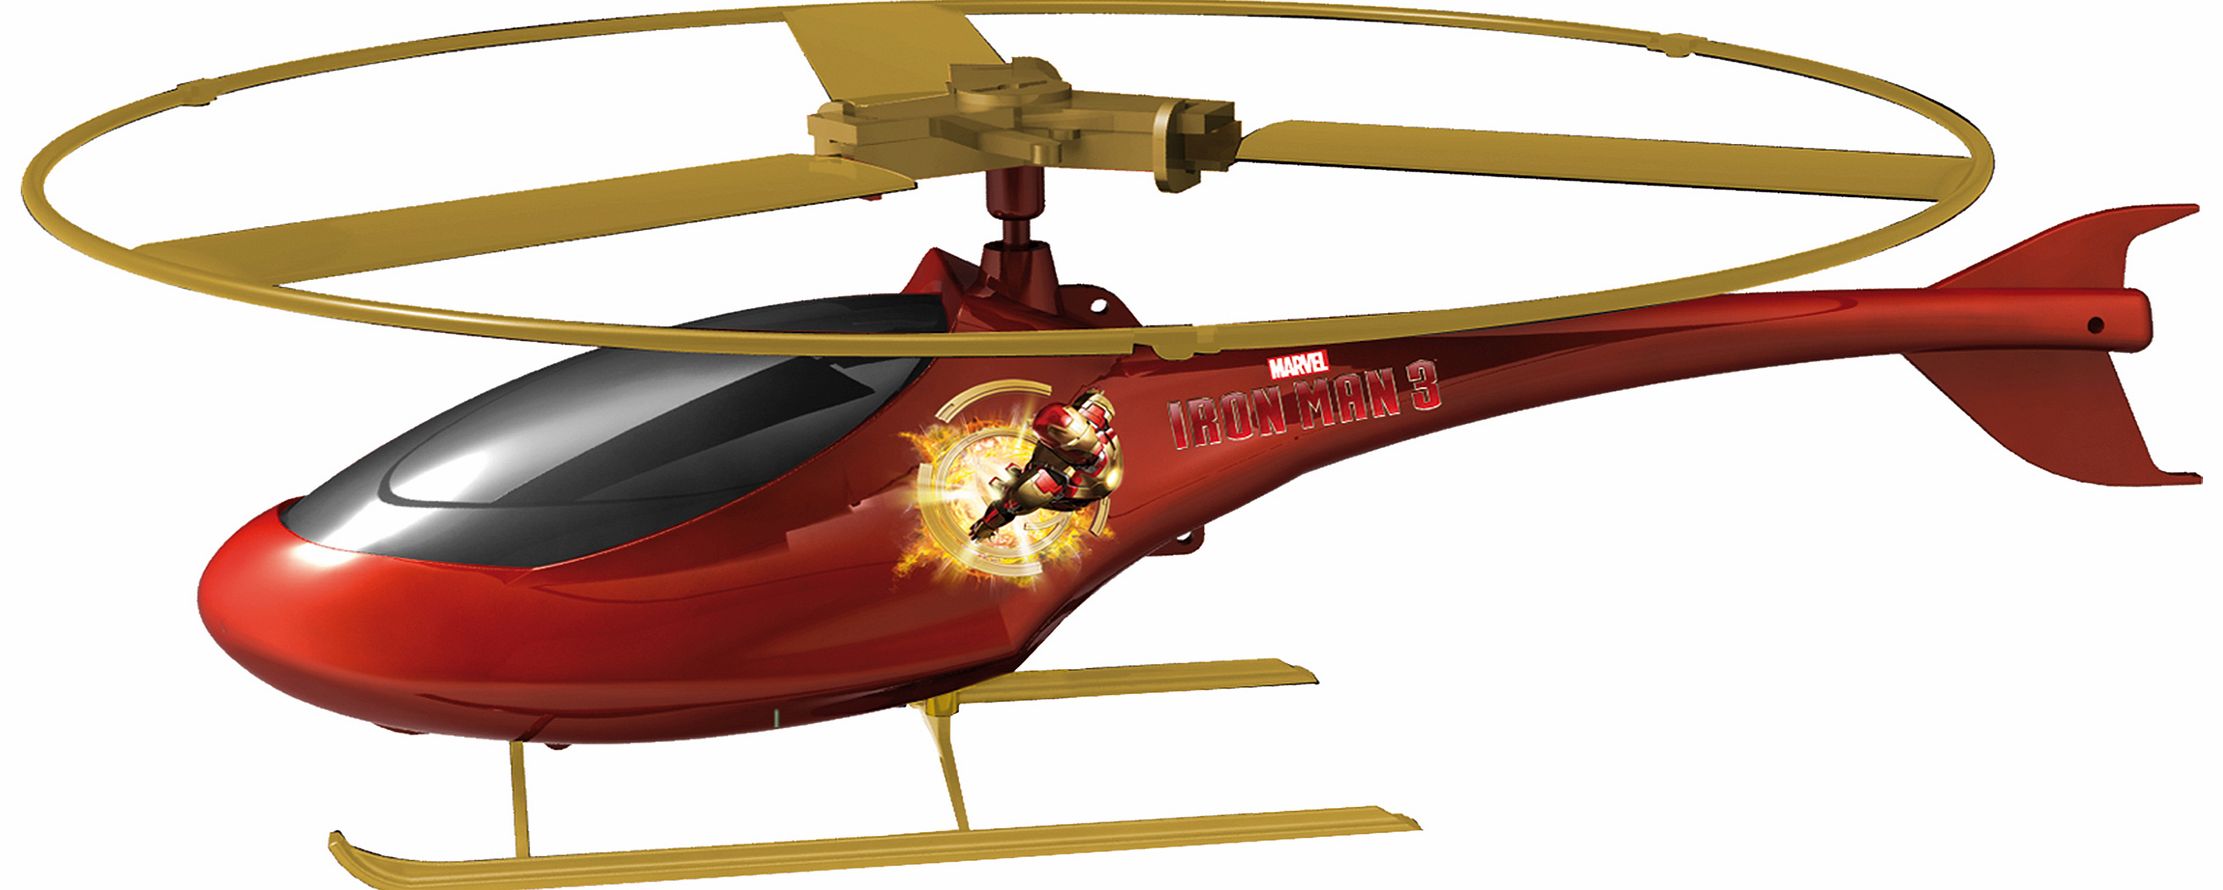 IMC Toys Iron Man Rescue Helicopter